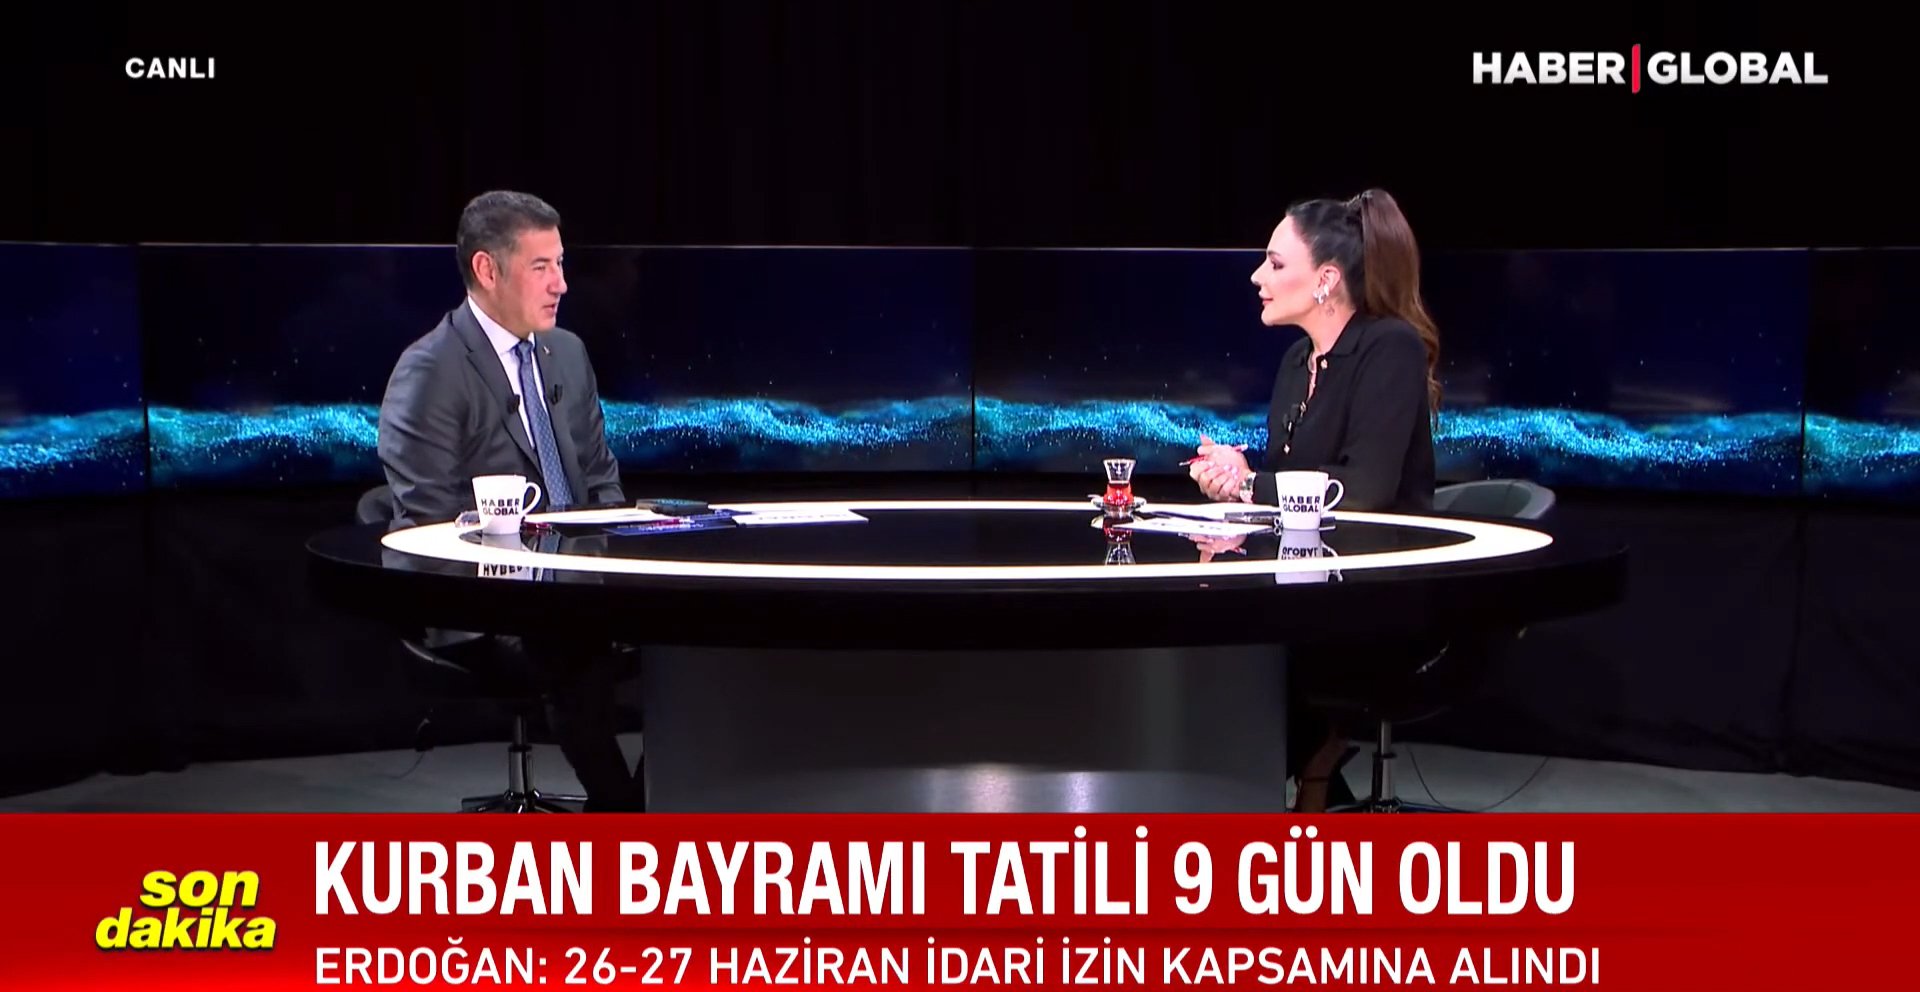 Синан Оган раскрыл подробности встреч с Эрдоганом и Кылычдароглу - ВИДЕО